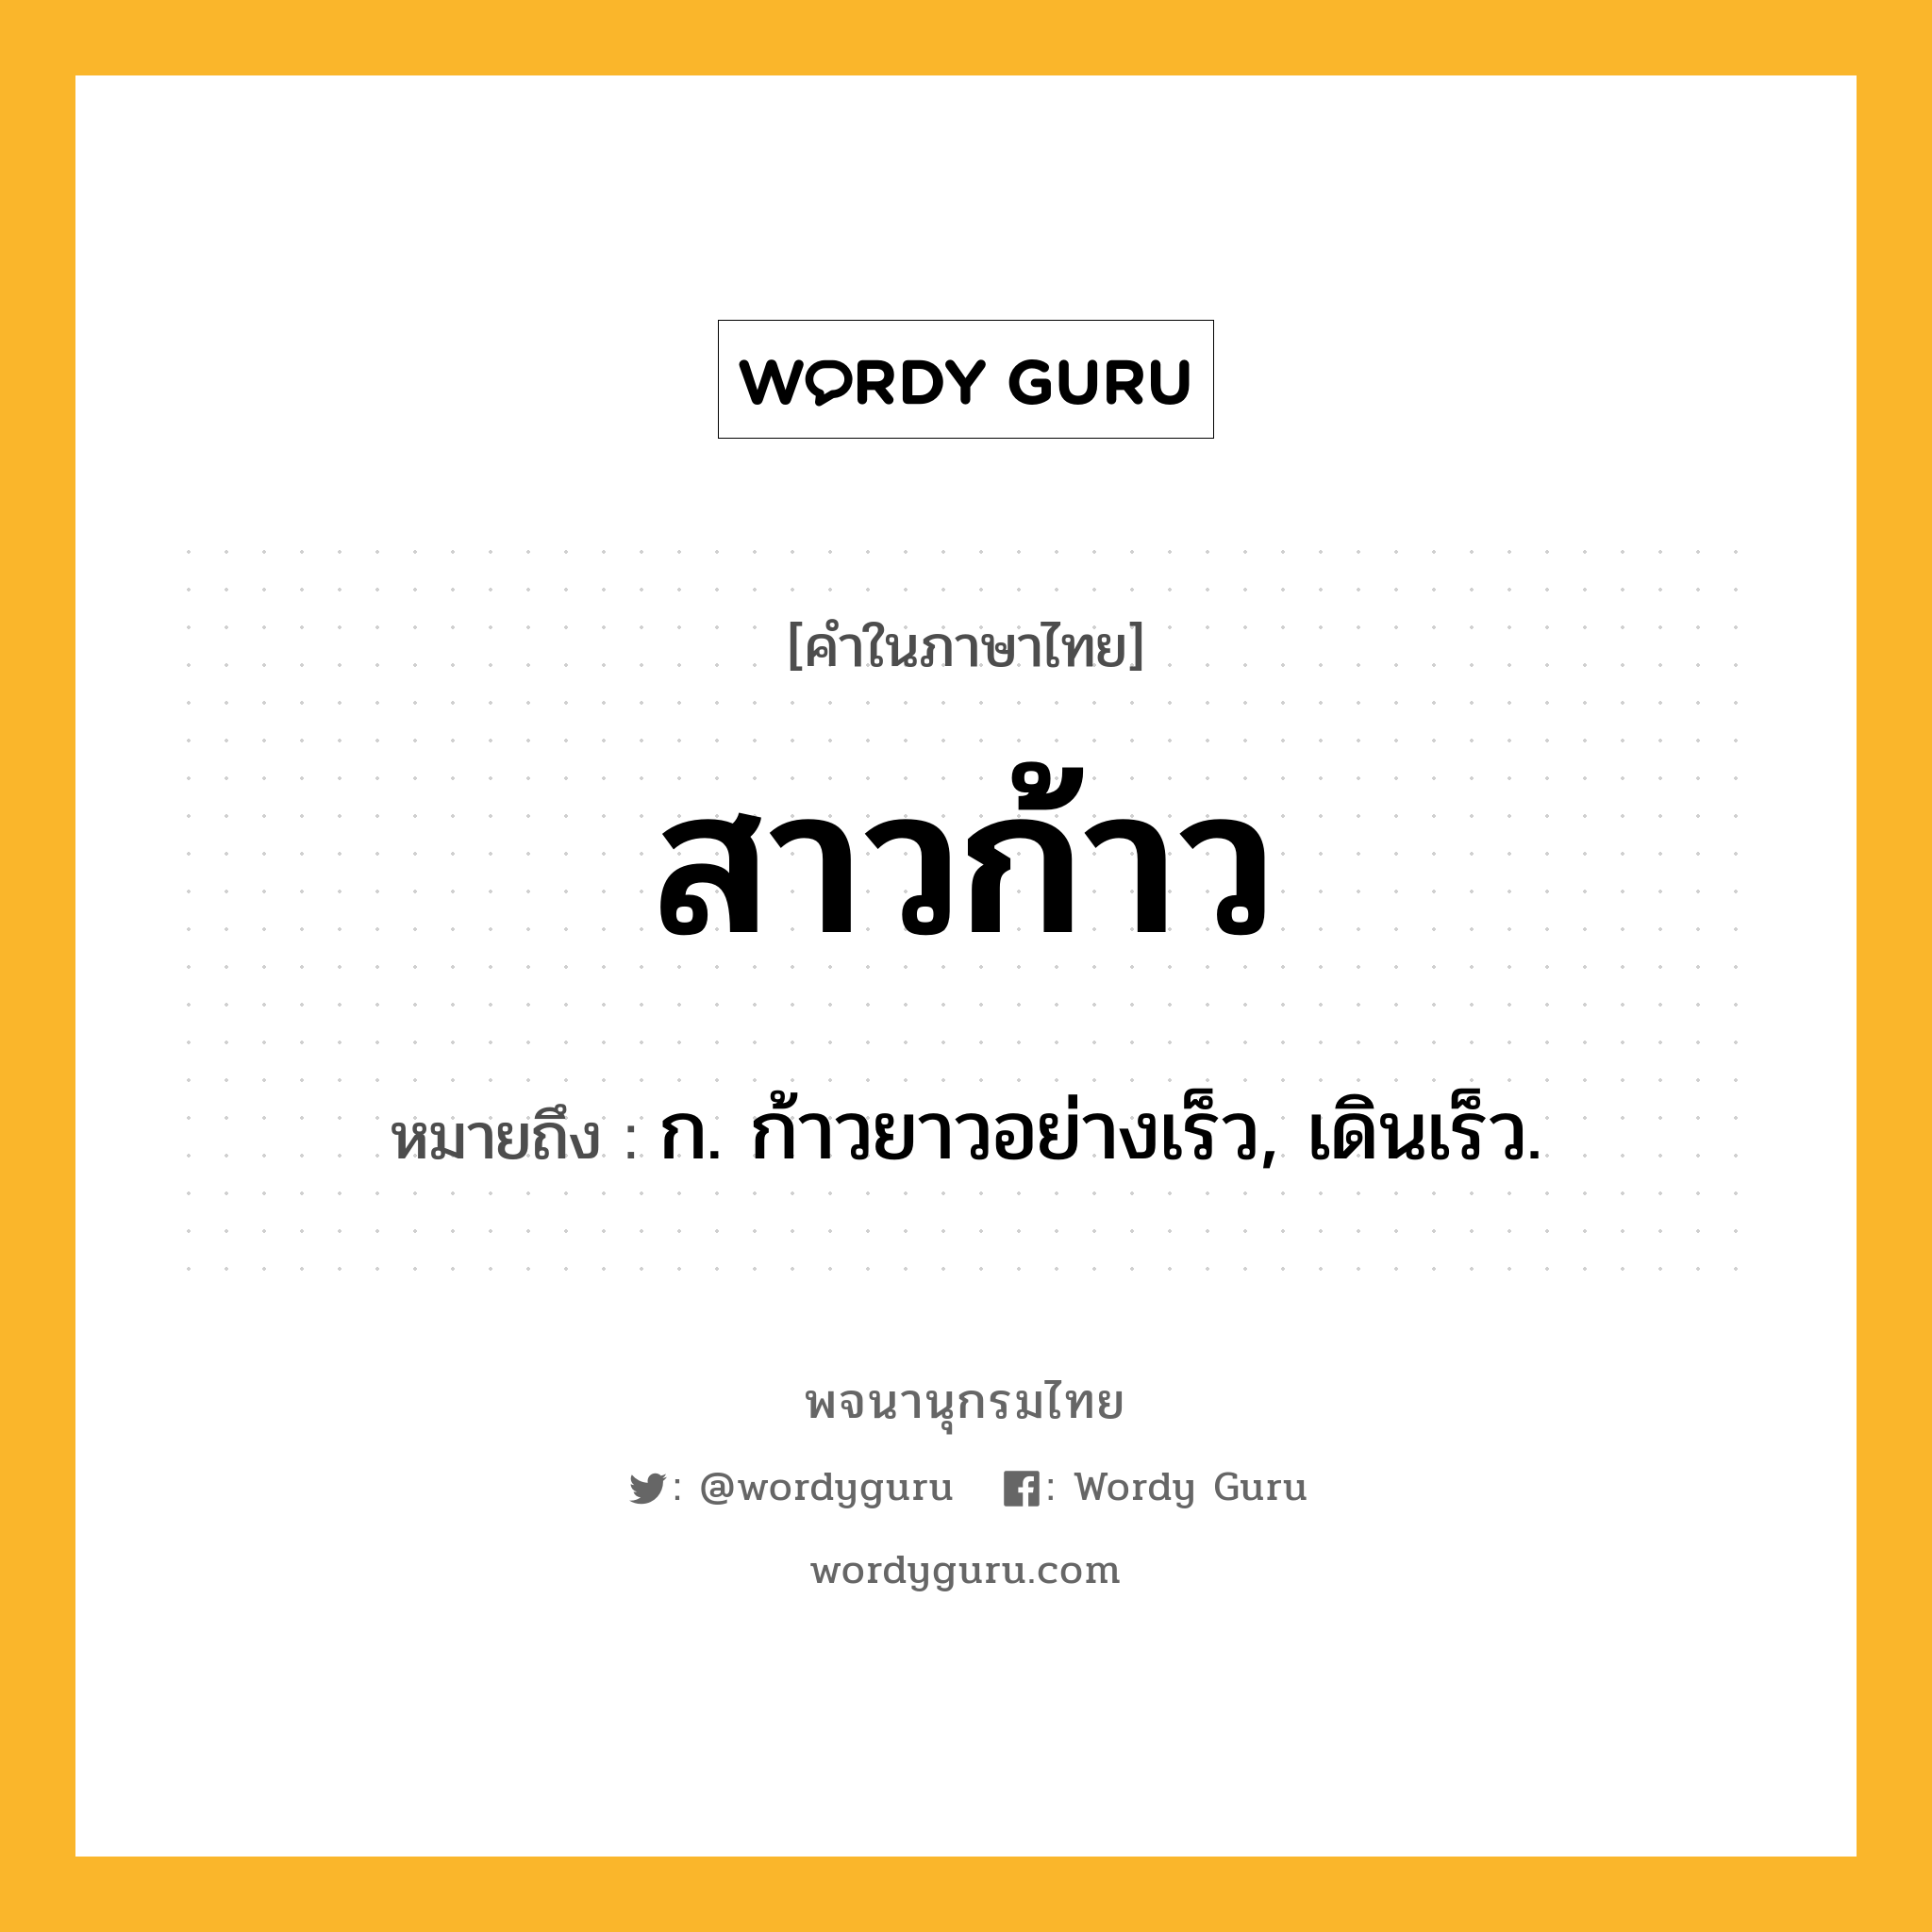 สาวก้าว หมายถึงอะไร?, คำในภาษาไทย สาวก้าว หมายถึง ก. ก้าวยาวอย่างเร็ว, เดินเร็ว.